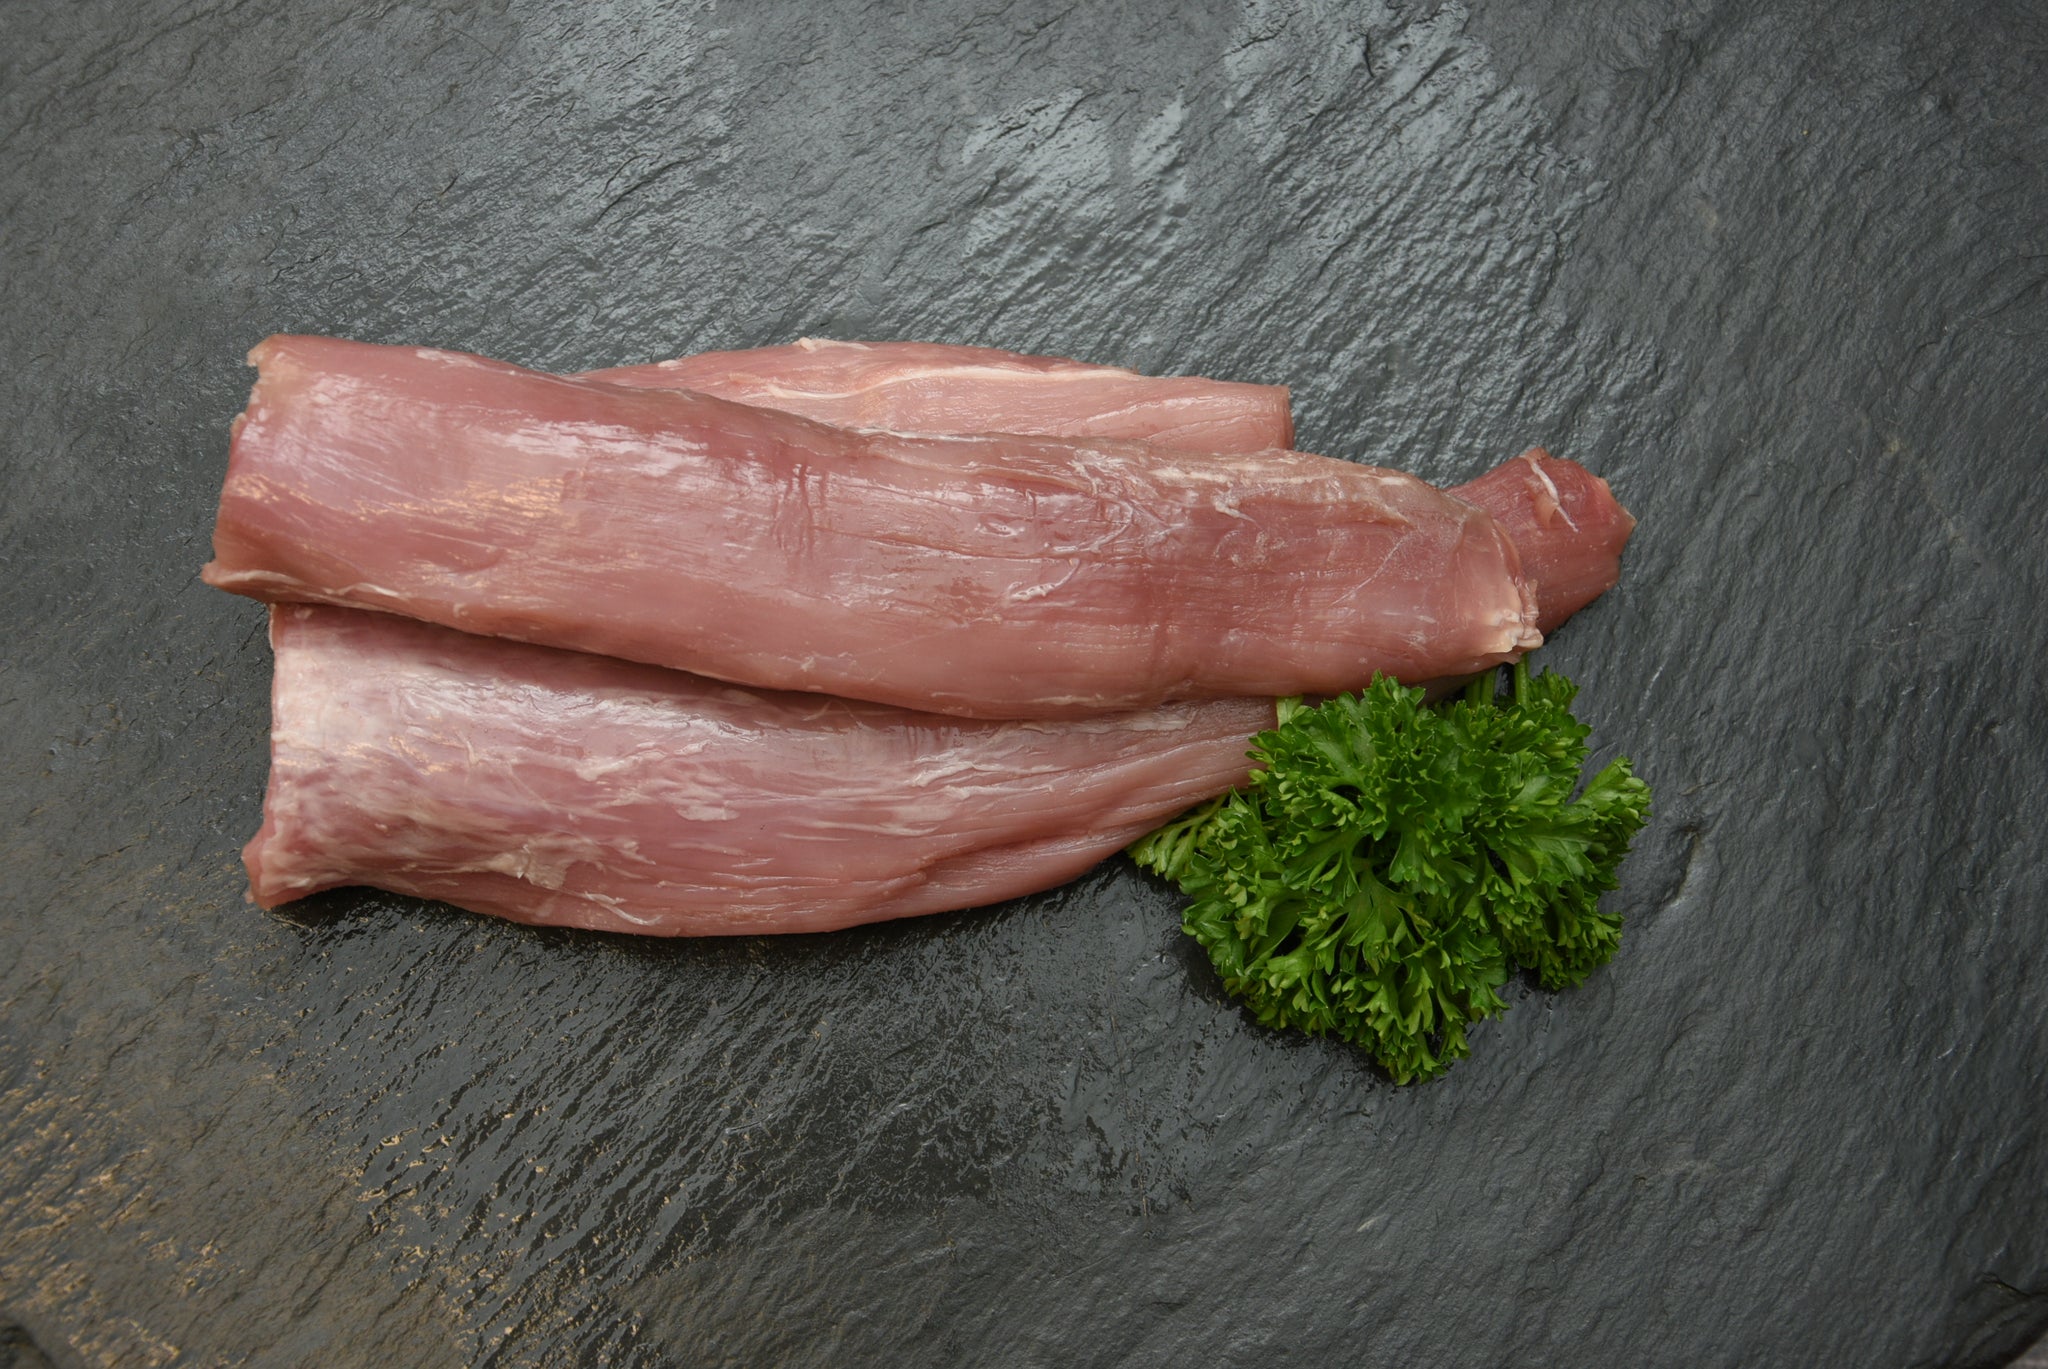 Schweinefilet, 250g Portion, Preis pro kg 31,90€ - Anzahlung